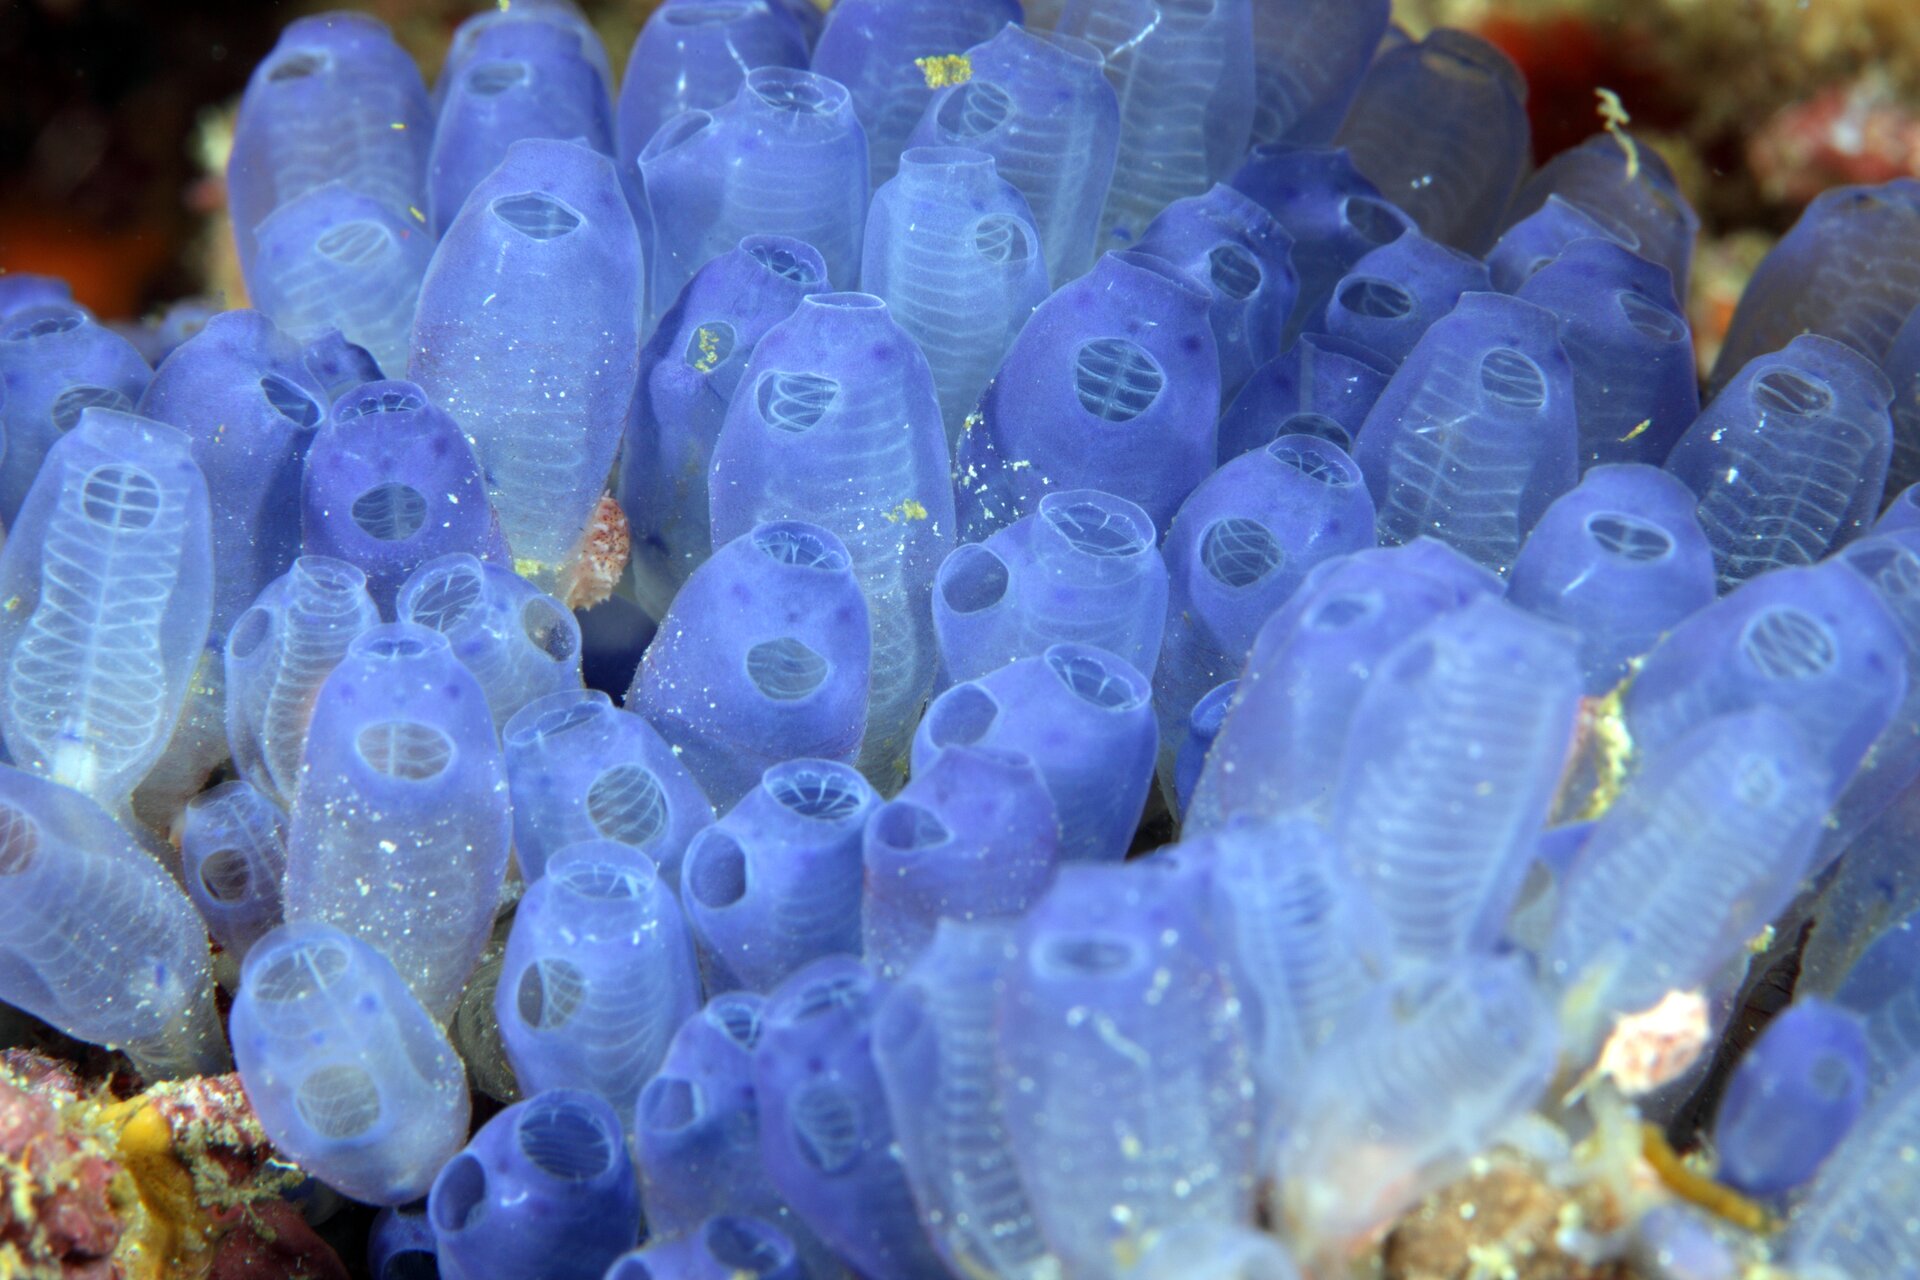 Zdjęcie przedstawia kolonię osłonic żyjącą w środowisku wodnym. Mają rurkowaty kształt, w środku mają drugą, karbowaną rurkę. Są półprzezroczyste, o niebieskawym odcieniu. Każda z osłonic posiada zwężenie na zakończeniu.  